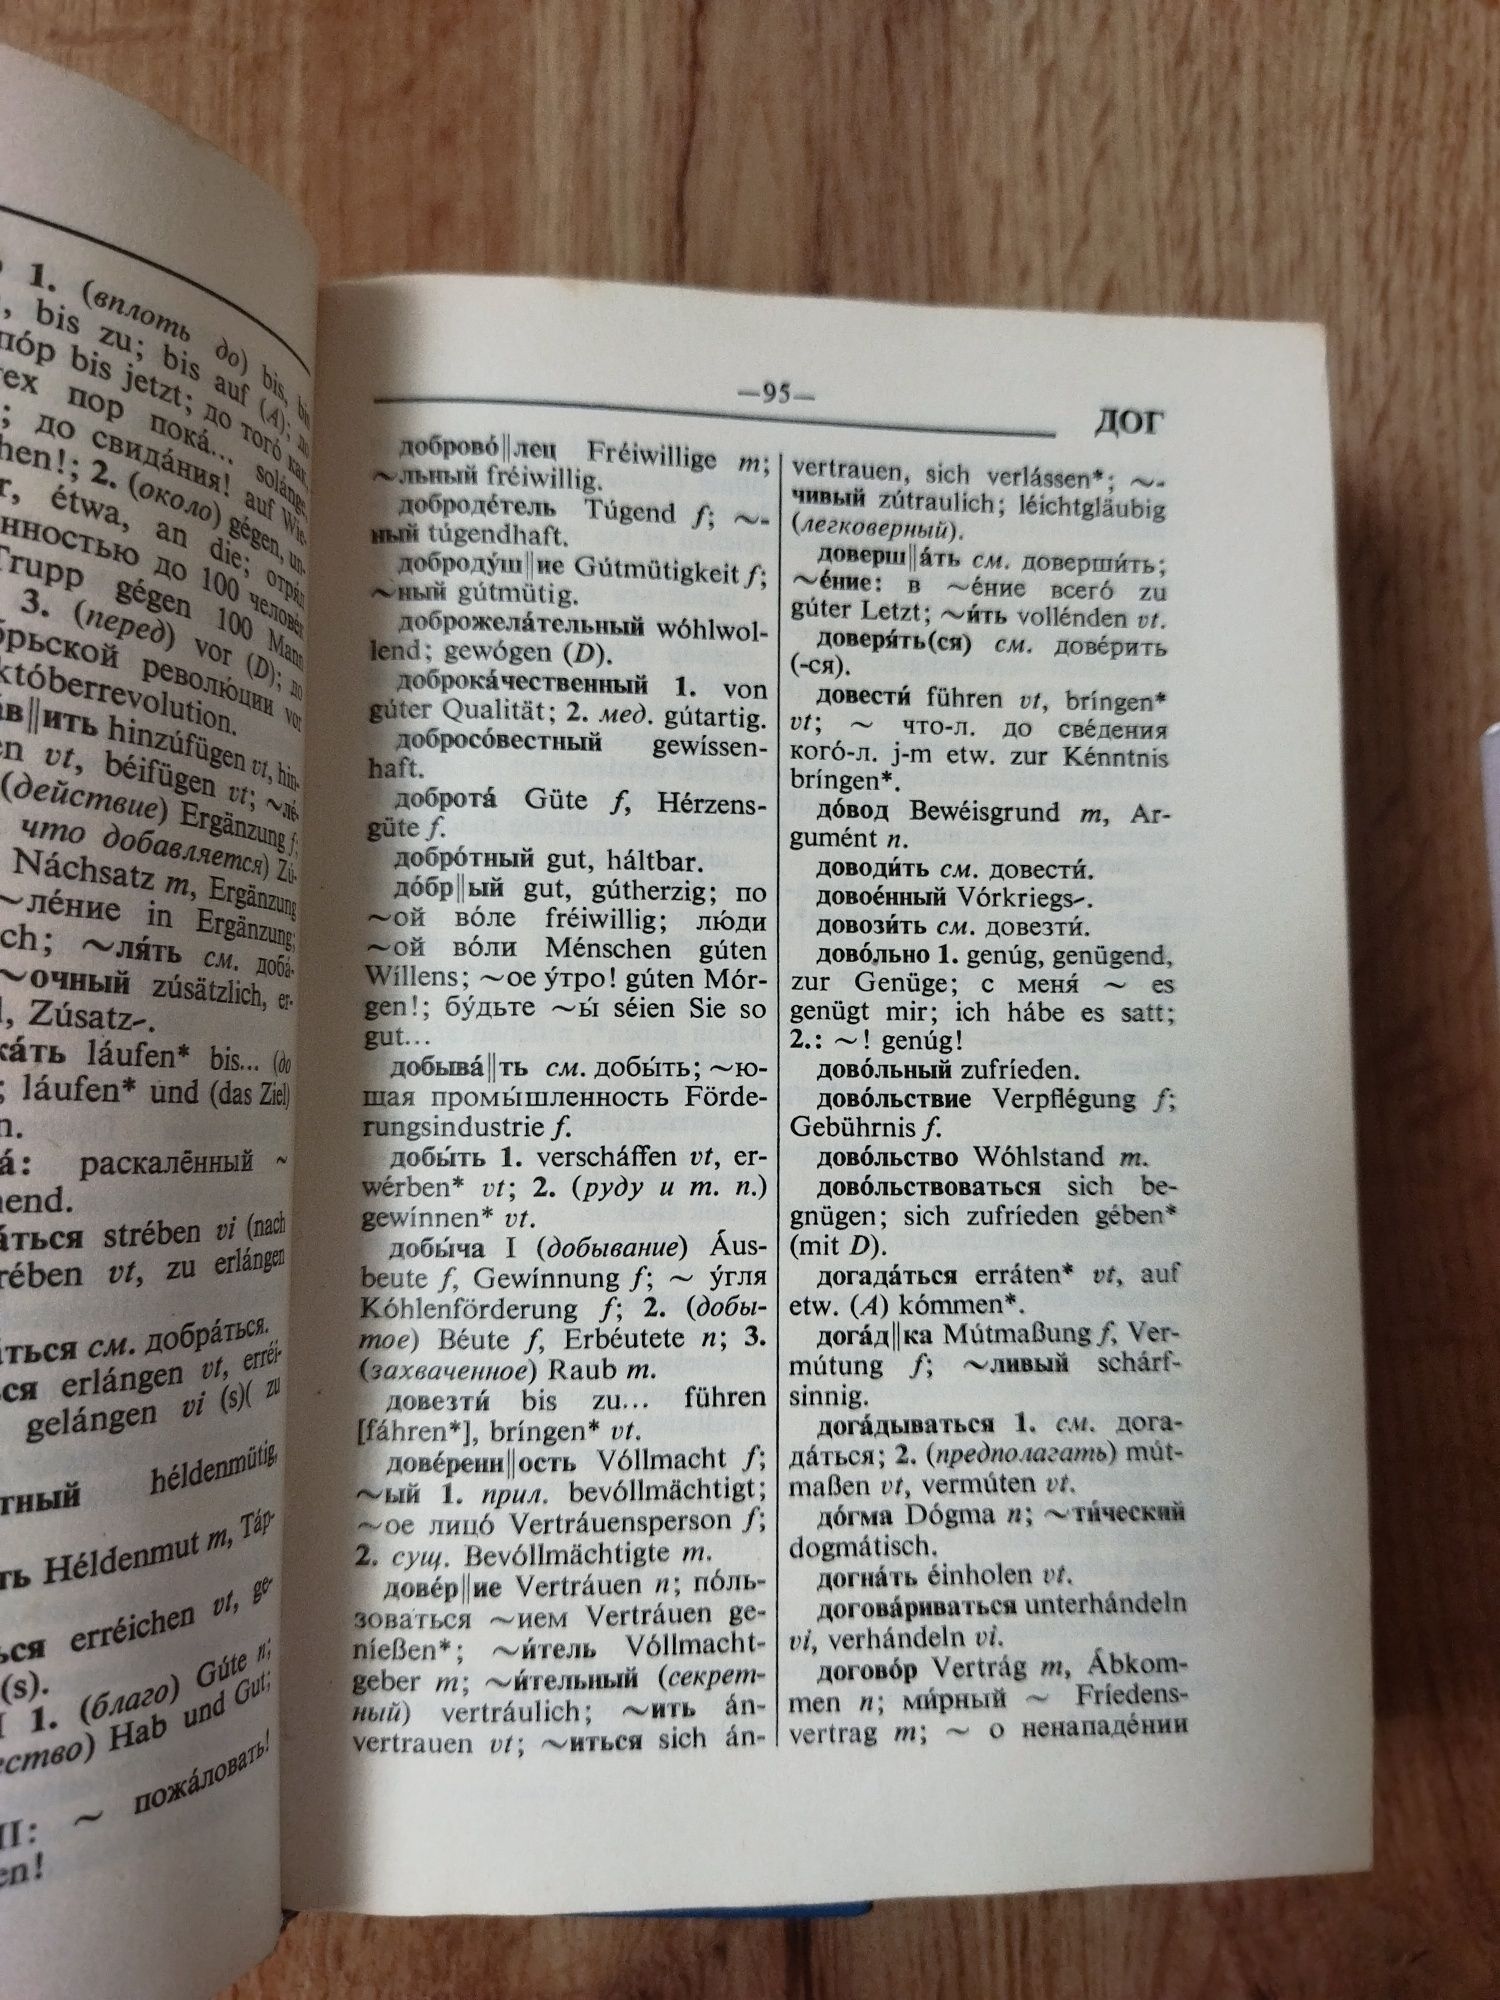 Русско-немецкий и Немецко-русский словари